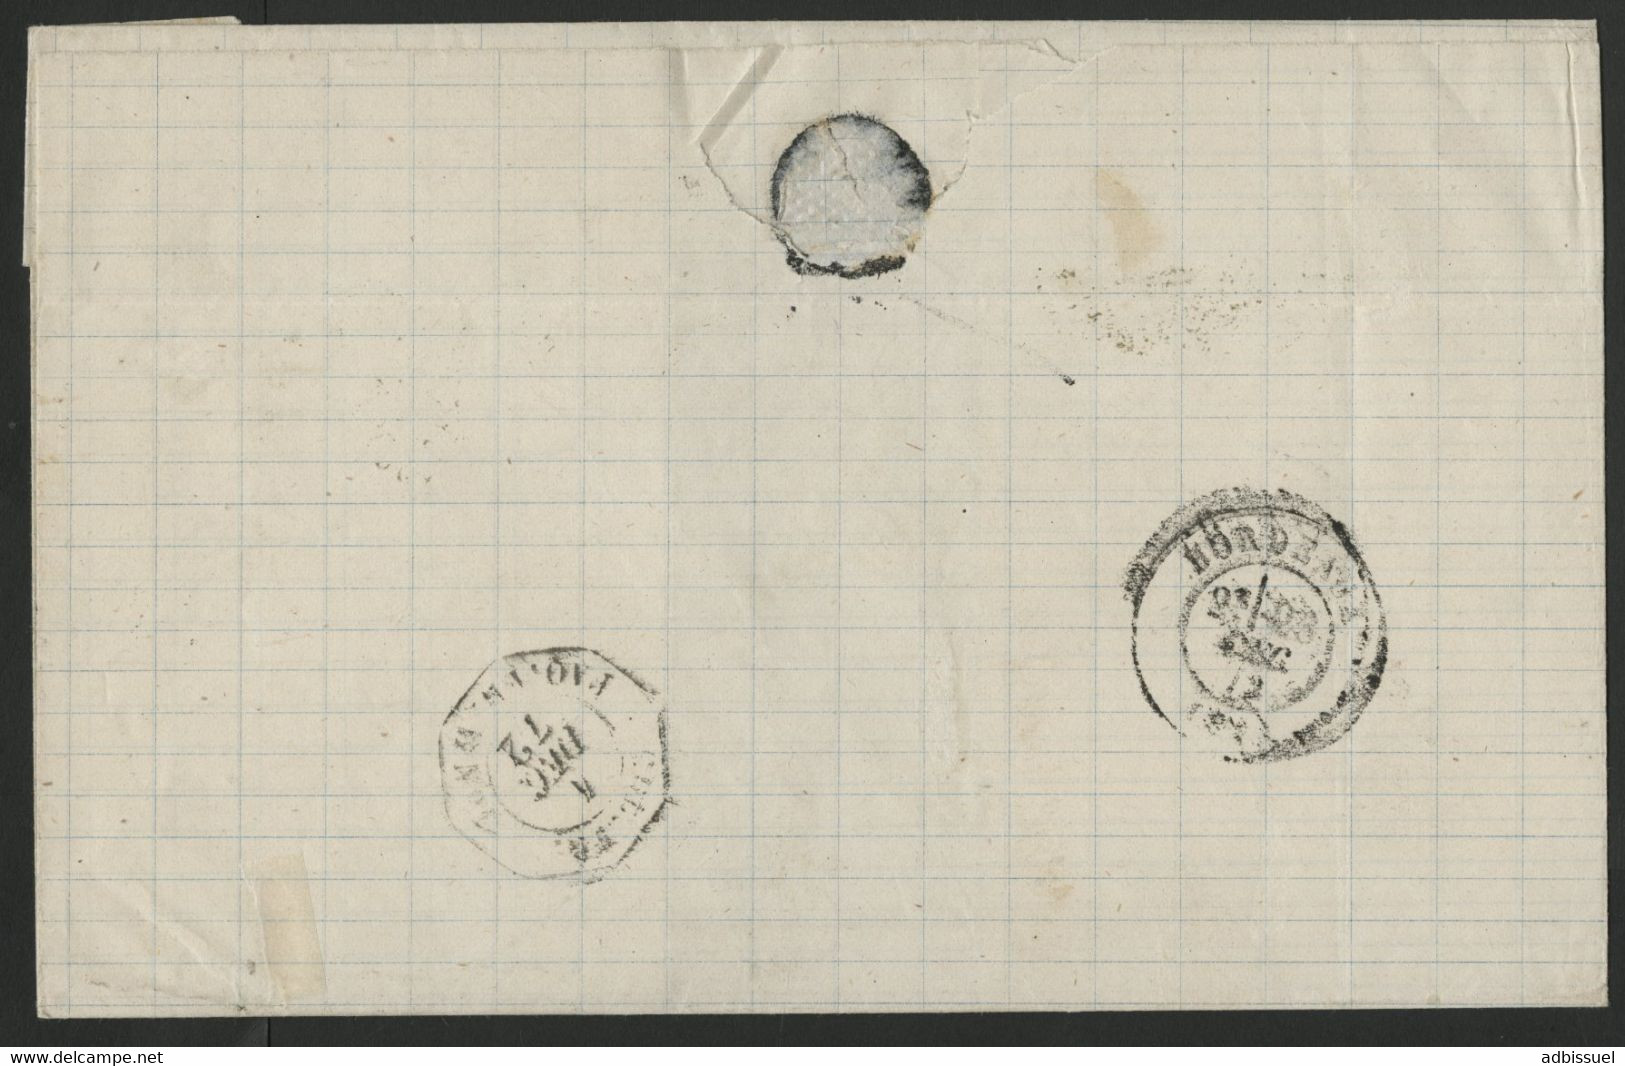 1872 SAINT PIERRE Pour BORDEAUX Cote 150 € Avec PAIRE Du N° 23 Type Cérès Voir Description - Briefe U. Dokumente